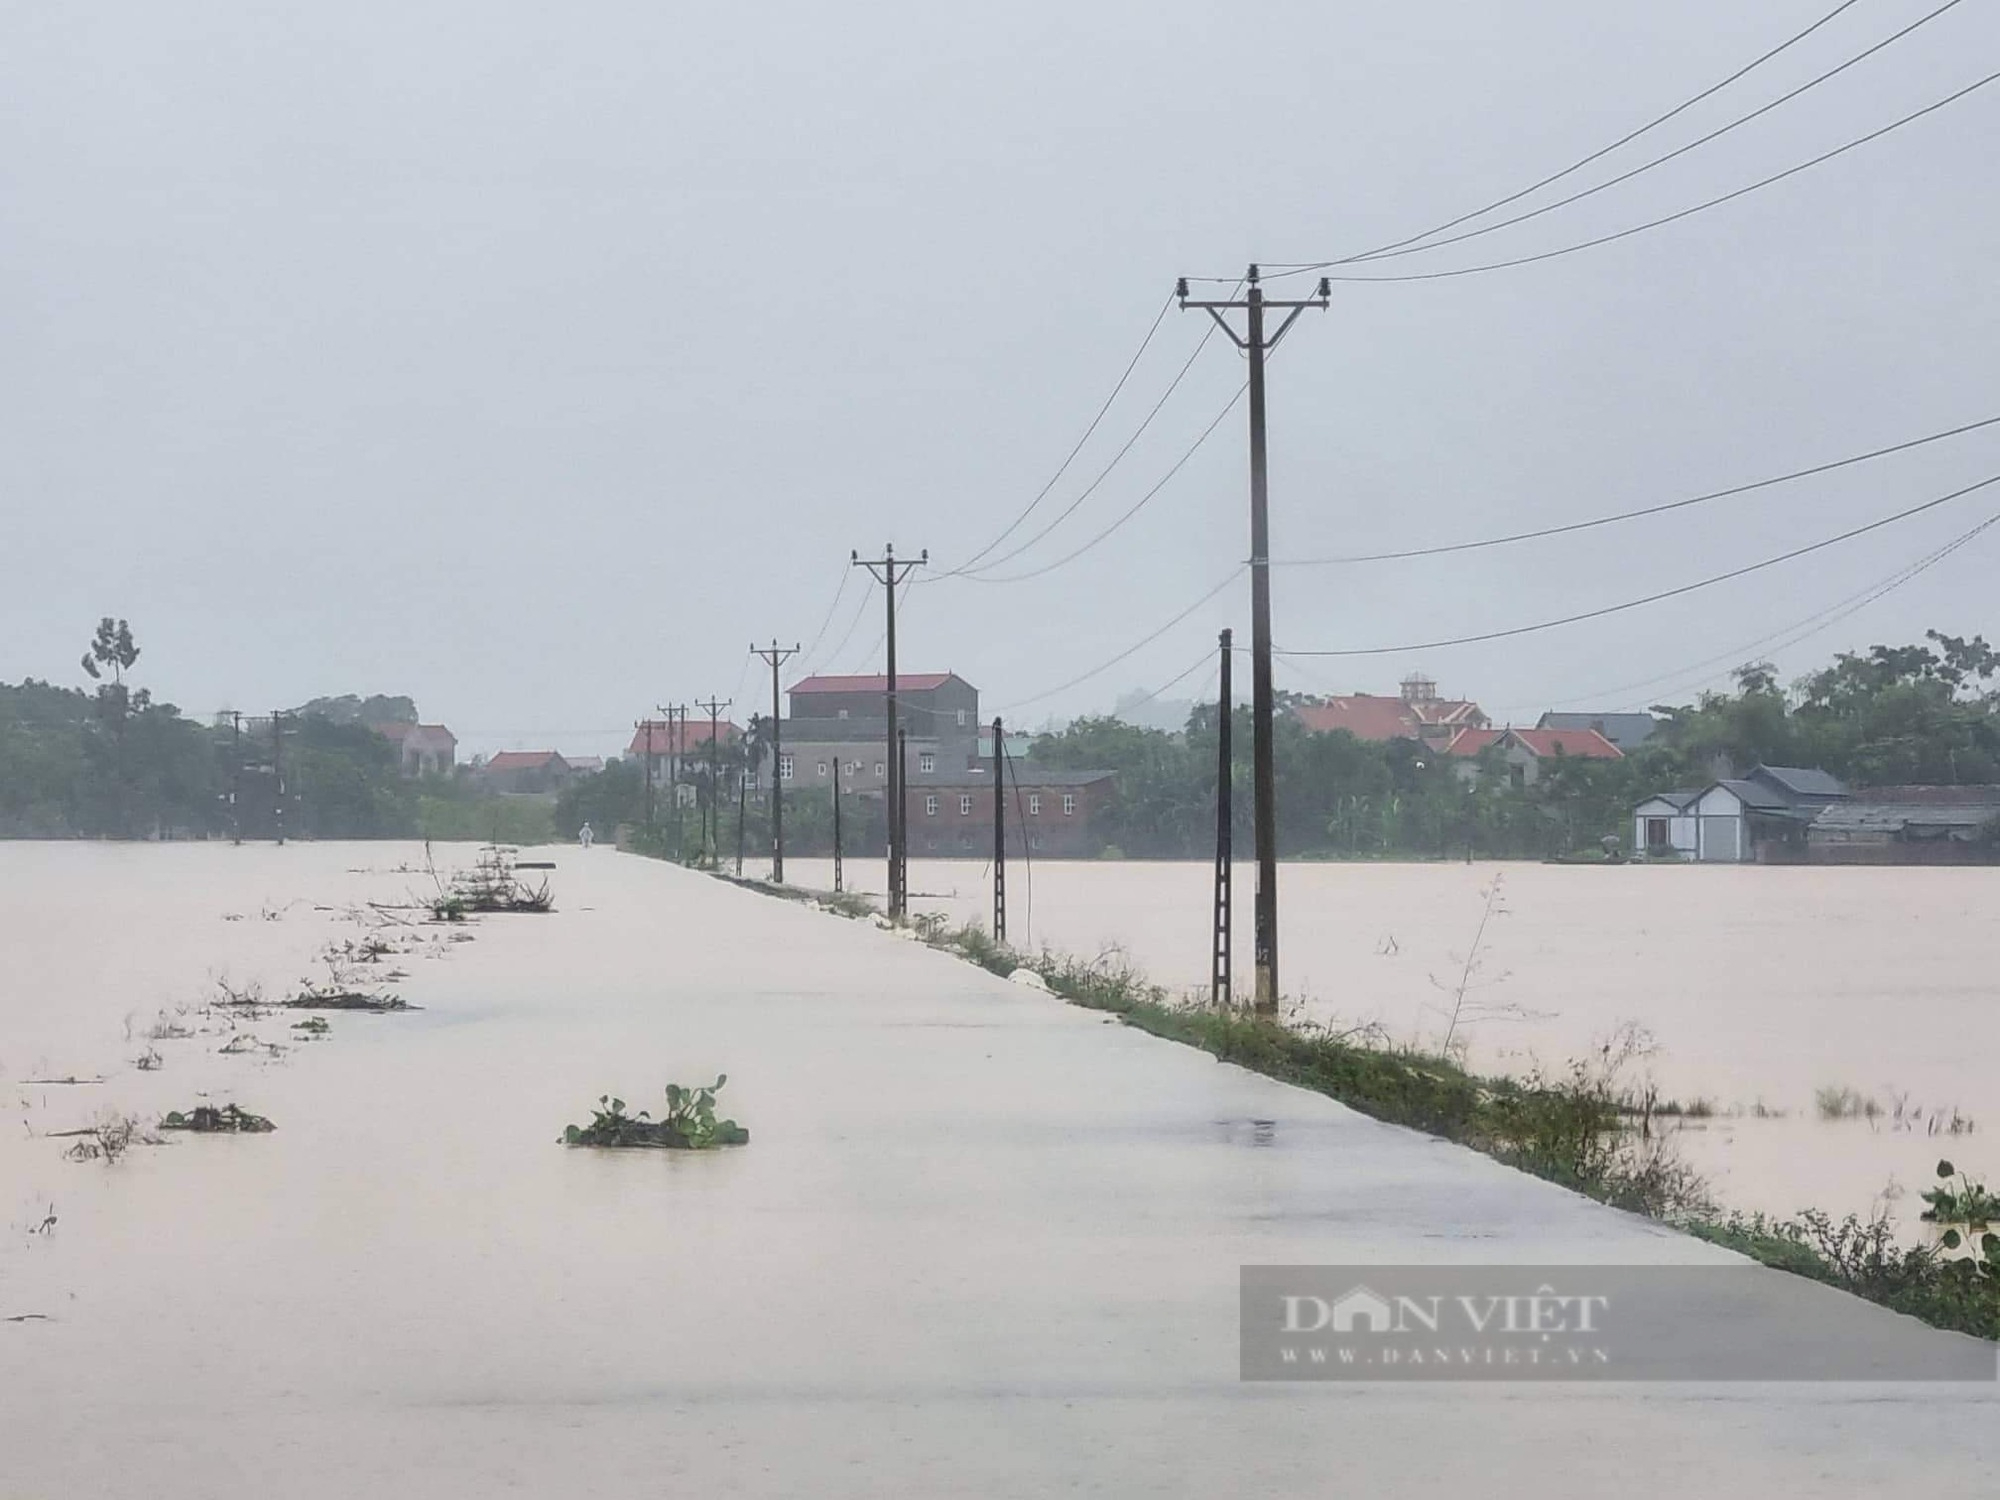 Dự báo 3-5 cơn bão sẽ ảnh hưởng tới đất liền, Phó Thủ tướng Lê Văn Thành yêu cầu chủ động phòng ngừa, ứng phó - Ảnh 2.